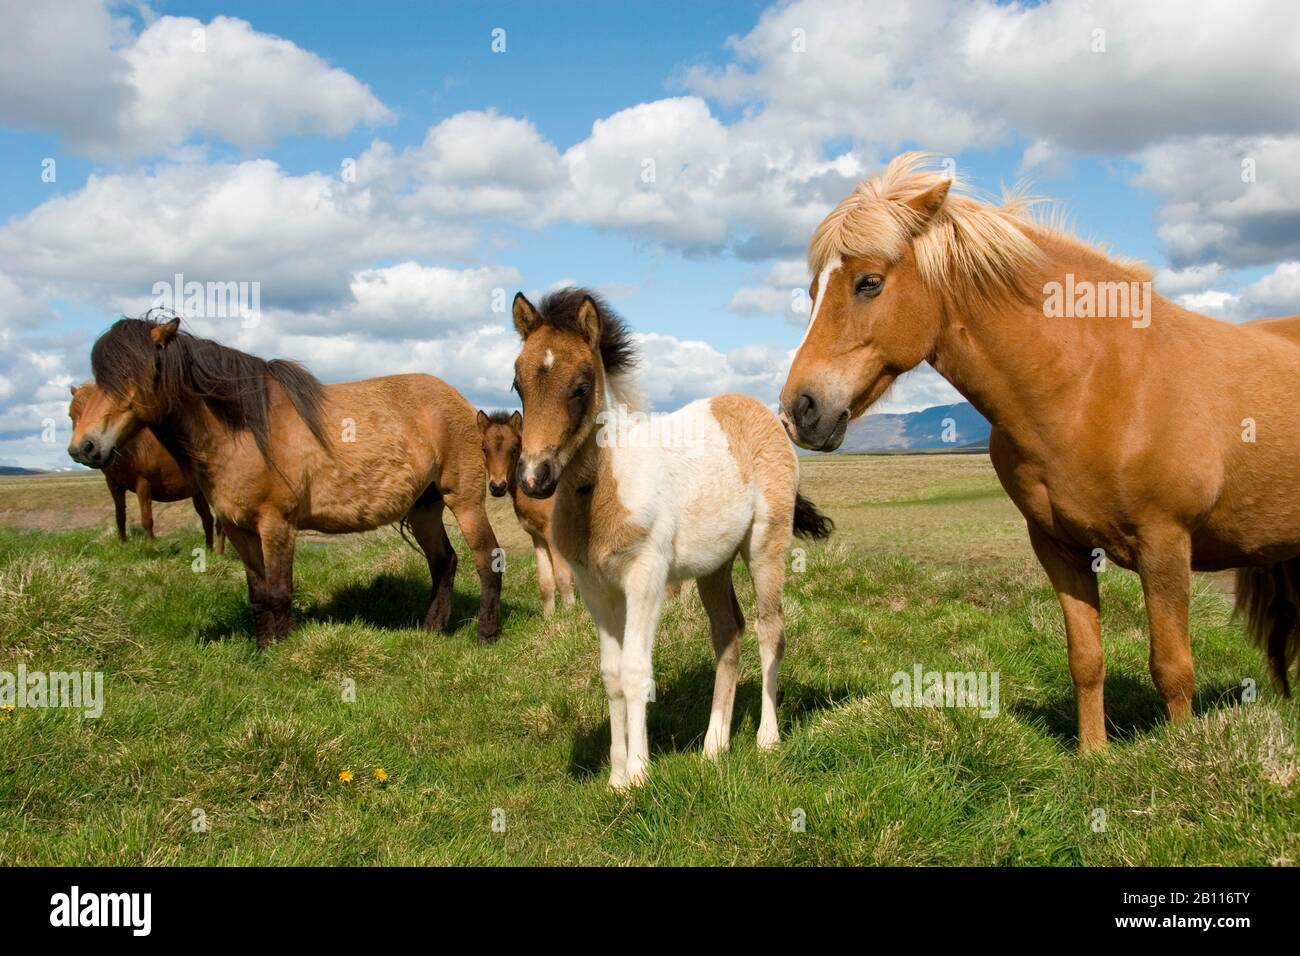 Islandic horse, Icelandic horse, Iceland pony (Equus przewalskii f. caballus), mares with foals, Iceland Stock Photo